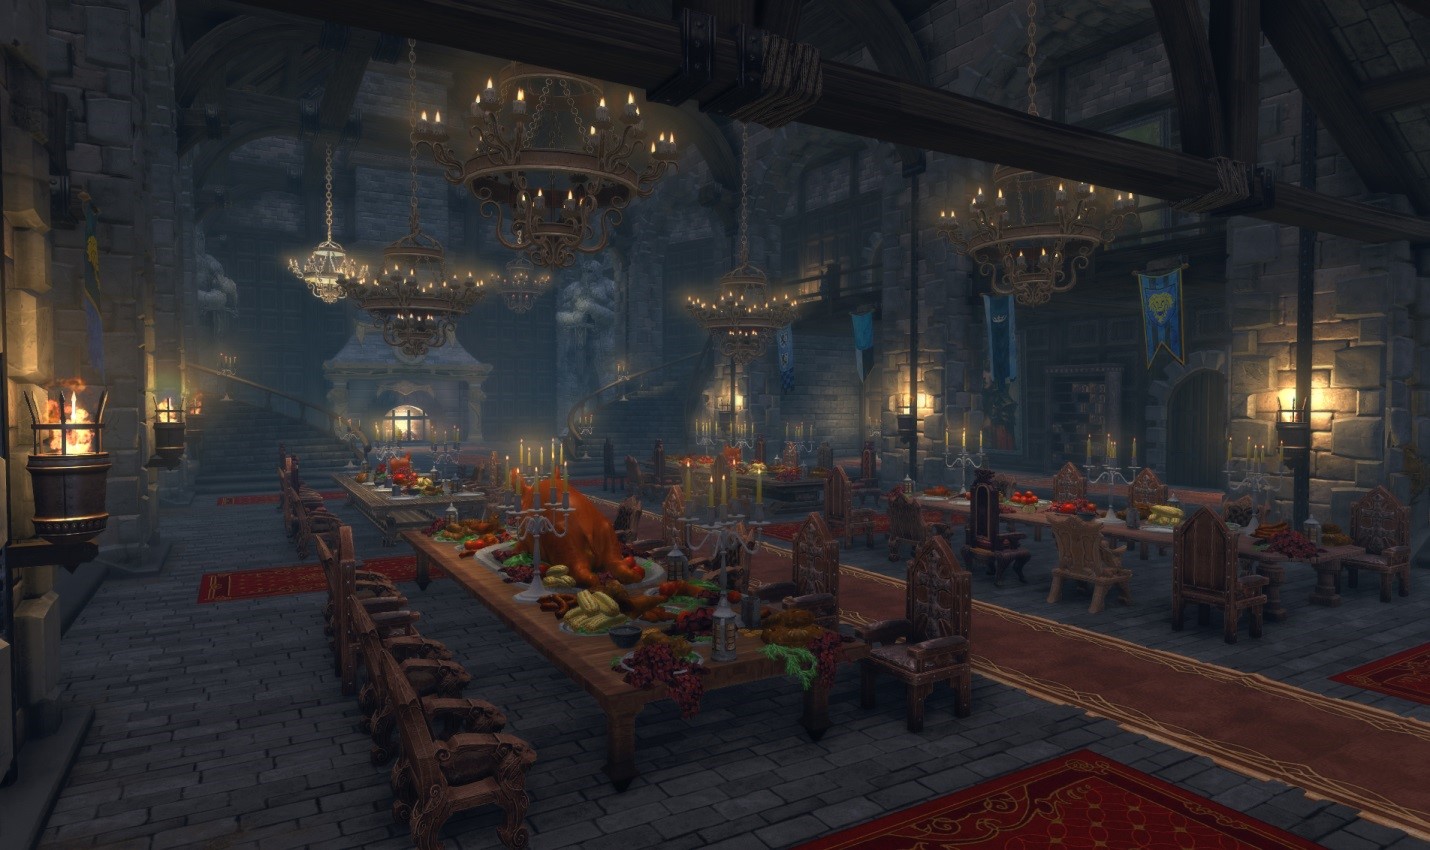 Игры за большим столом. Зал в замке. Обеденный зал в замке. Средневековые залы. Обеденный зал фэнтези.